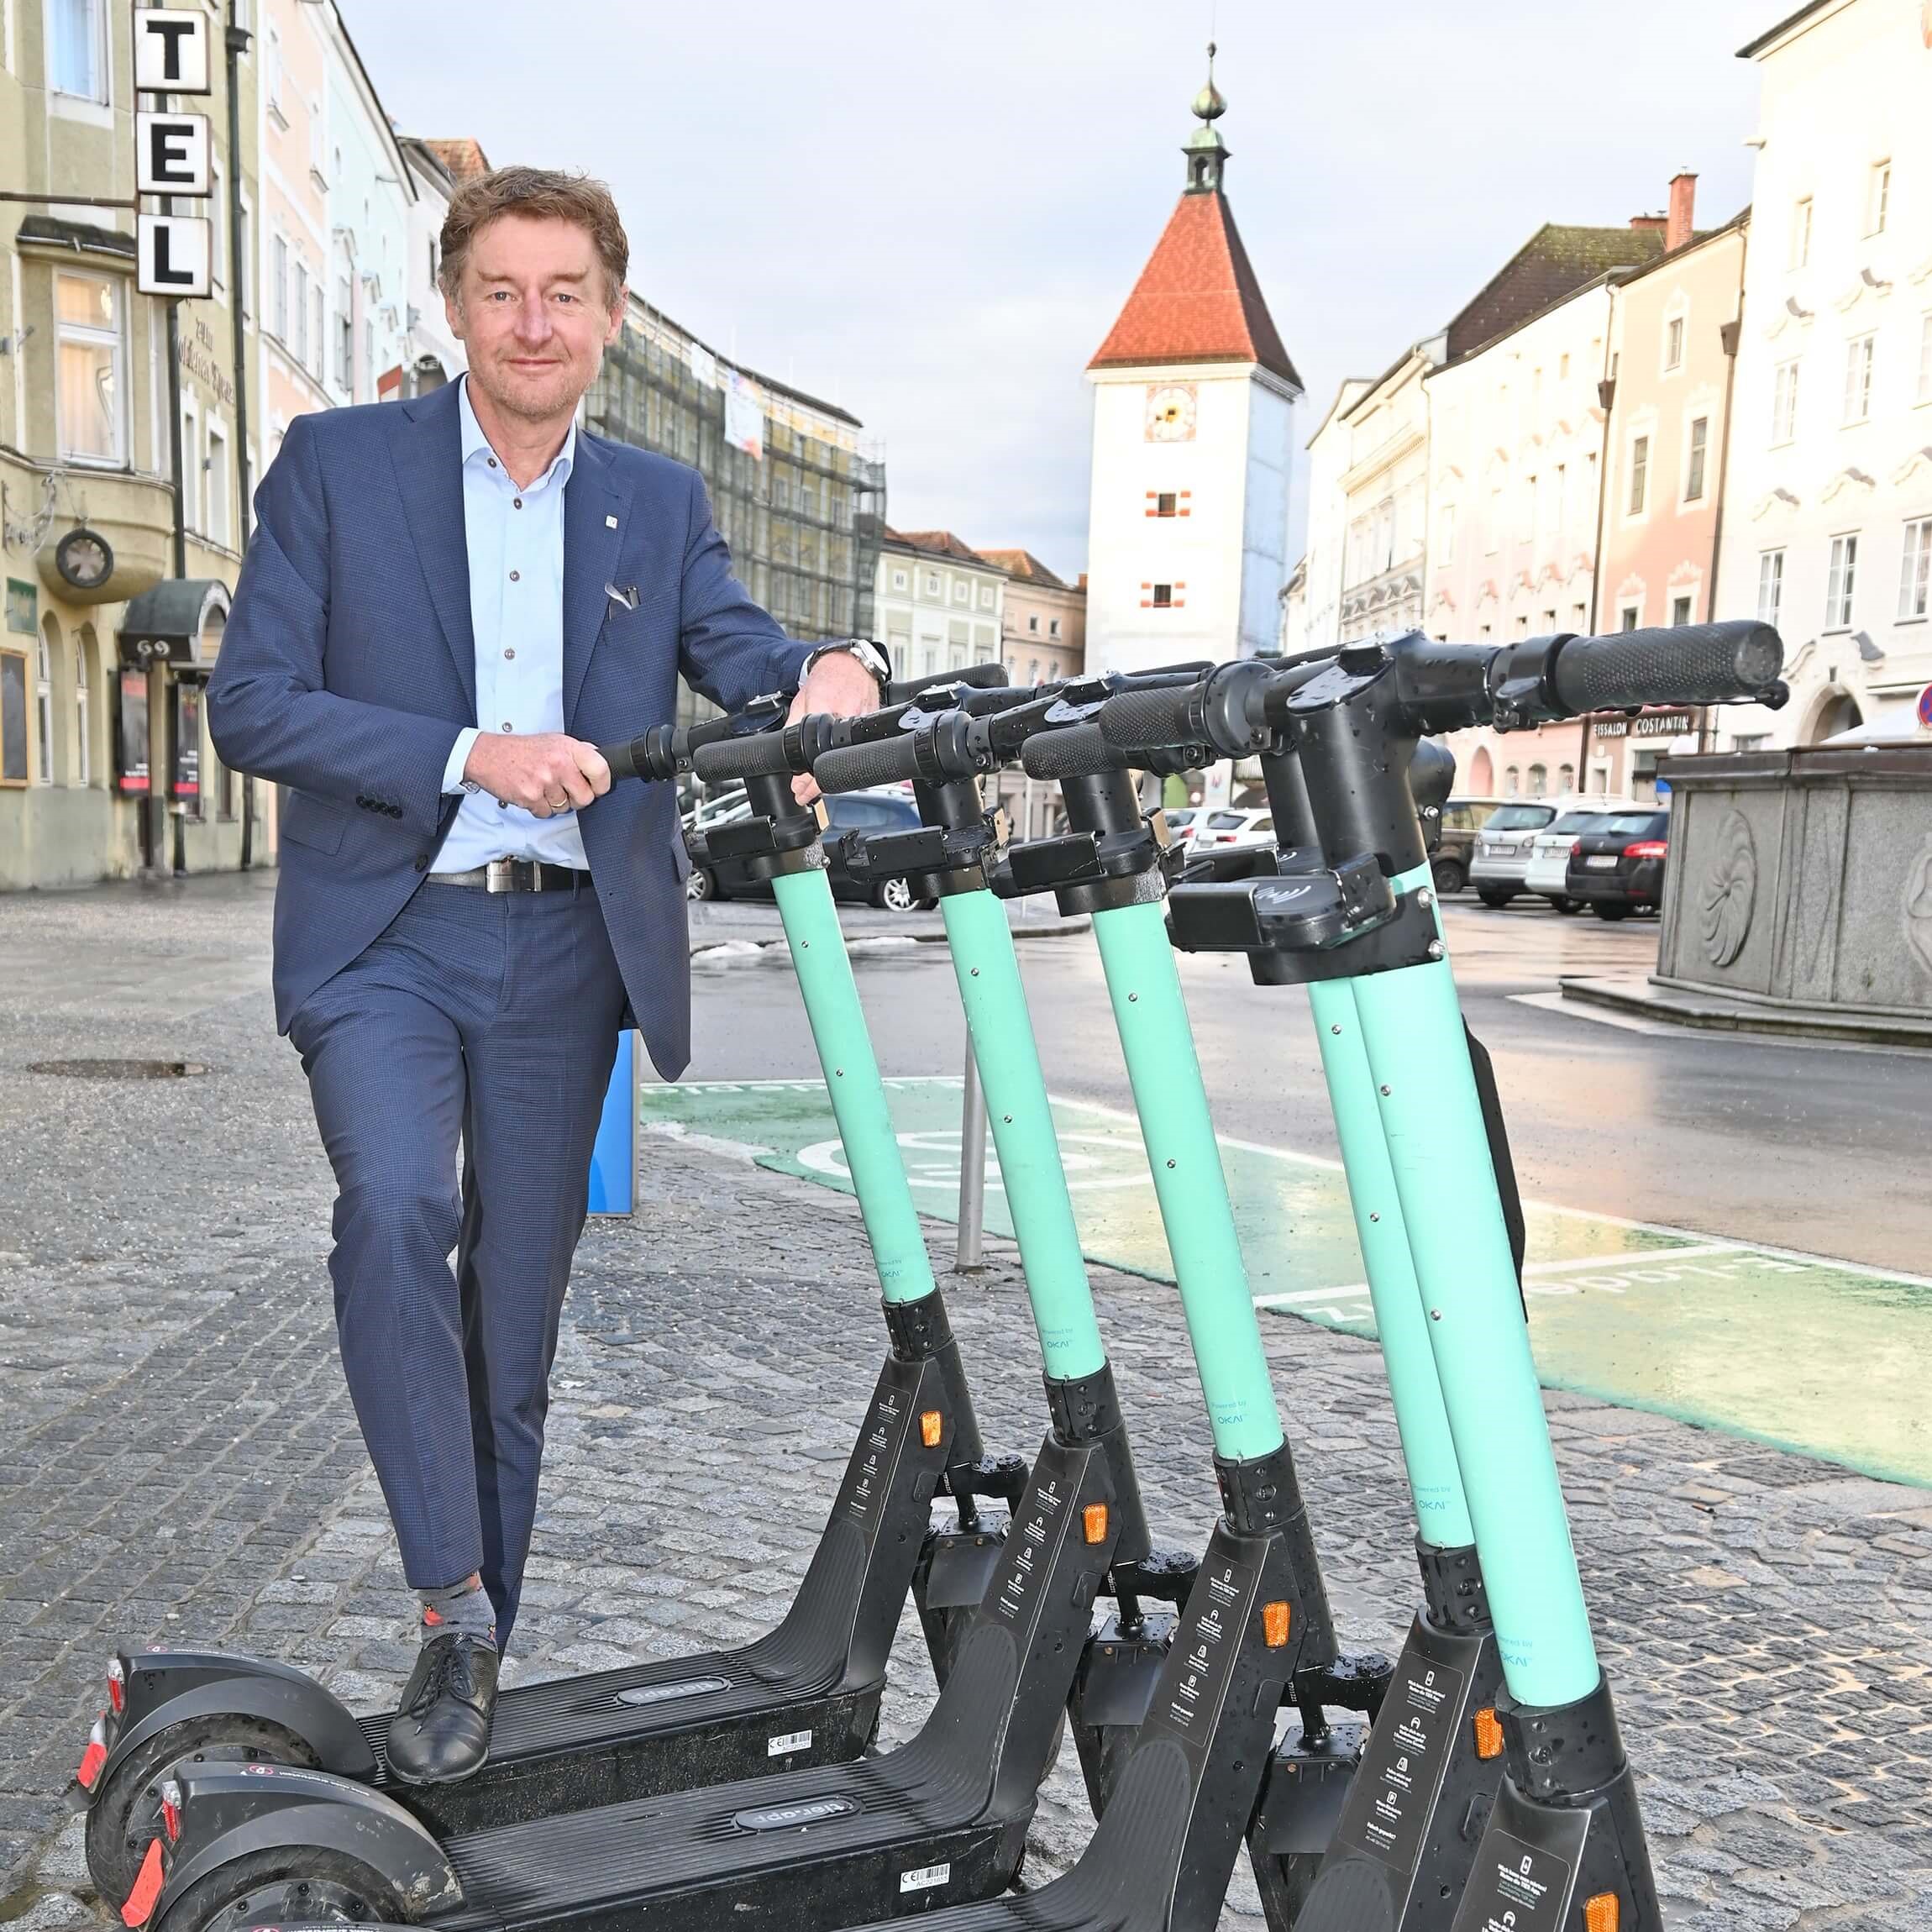 Vizebürgermeister Gerhard Kroiß steht hinter einer Gruppe von E-Scootern auf dem Stadtplatz, im Hintergrund ist der Ledererturm zu sehen